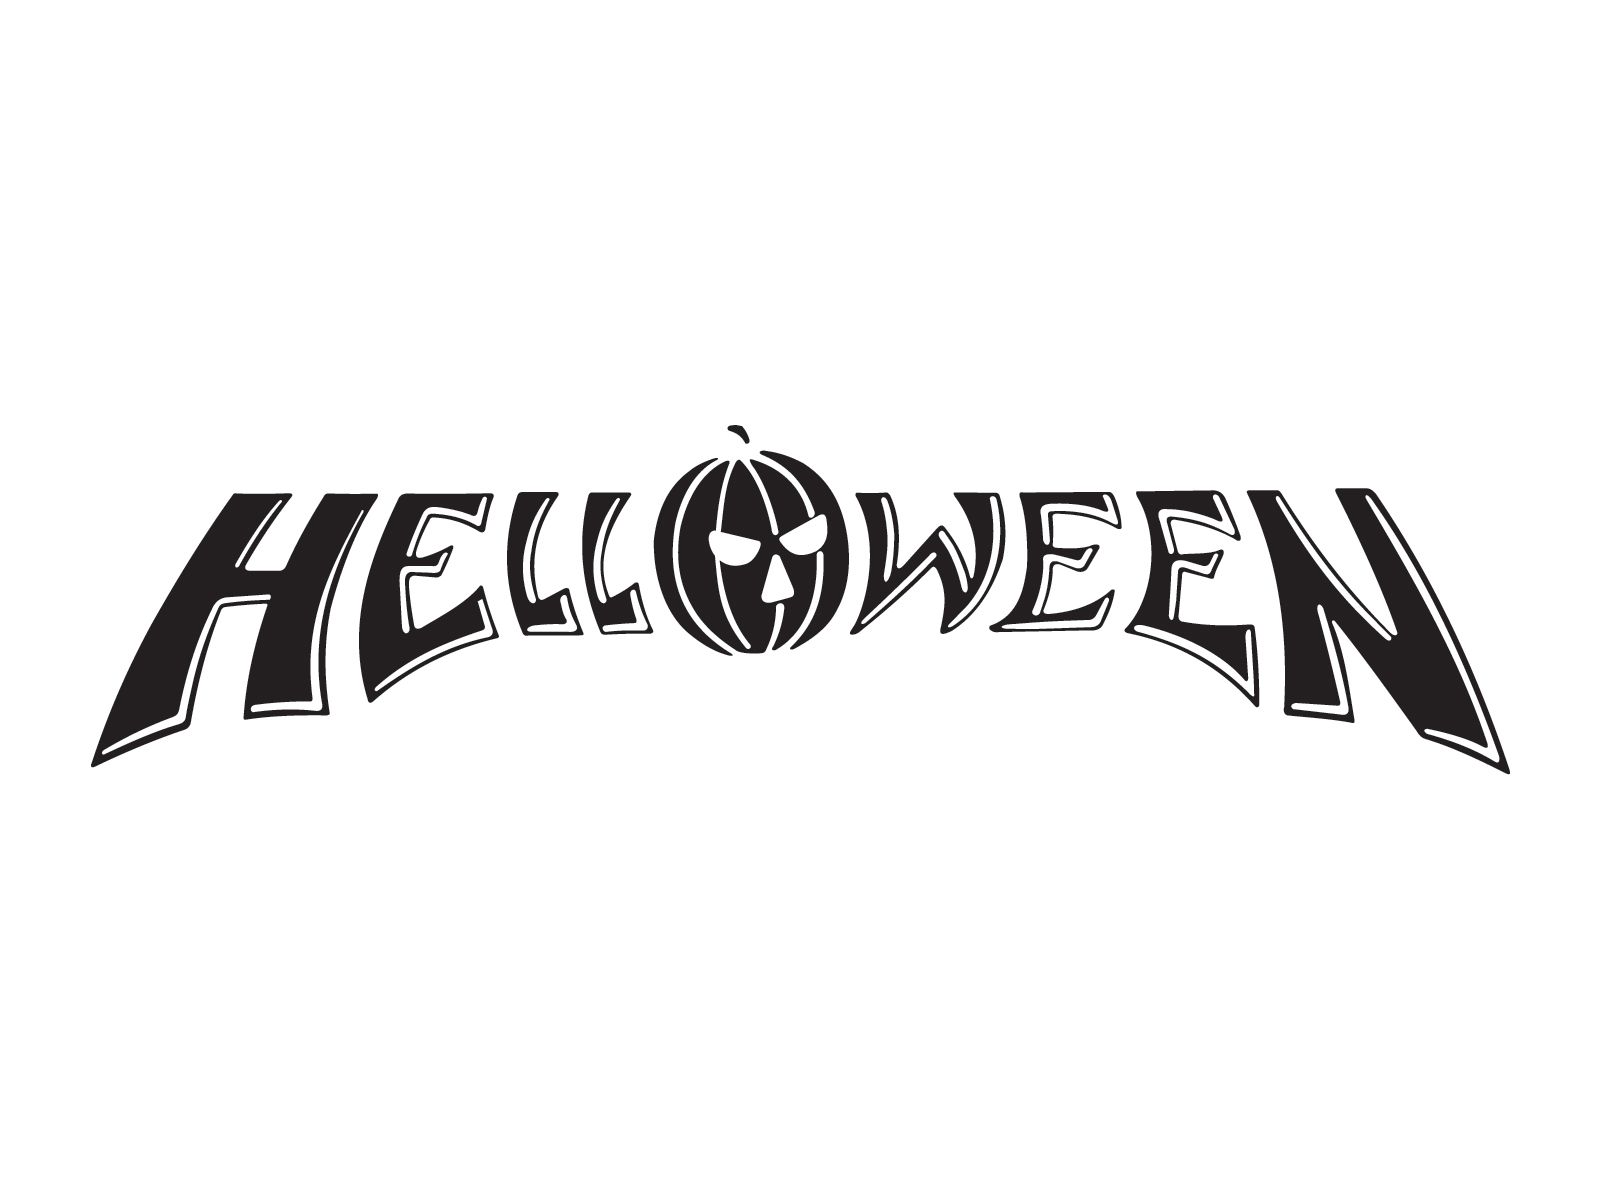 Helloween logo wallpaper. Metal band logos, Heavy metal music, Band logos